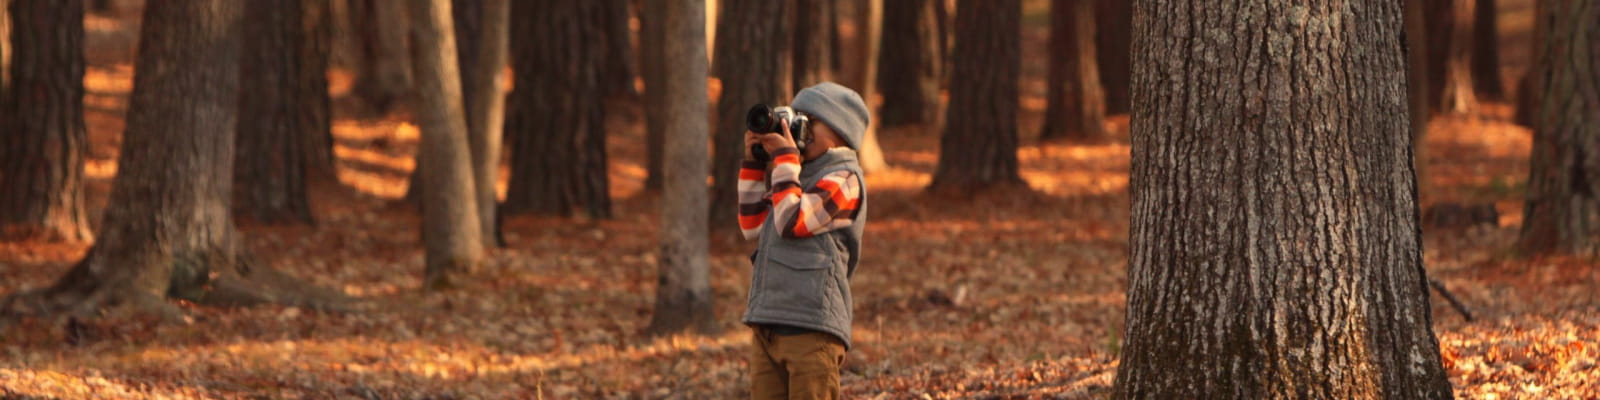 enfant qui prend la forêt en photo